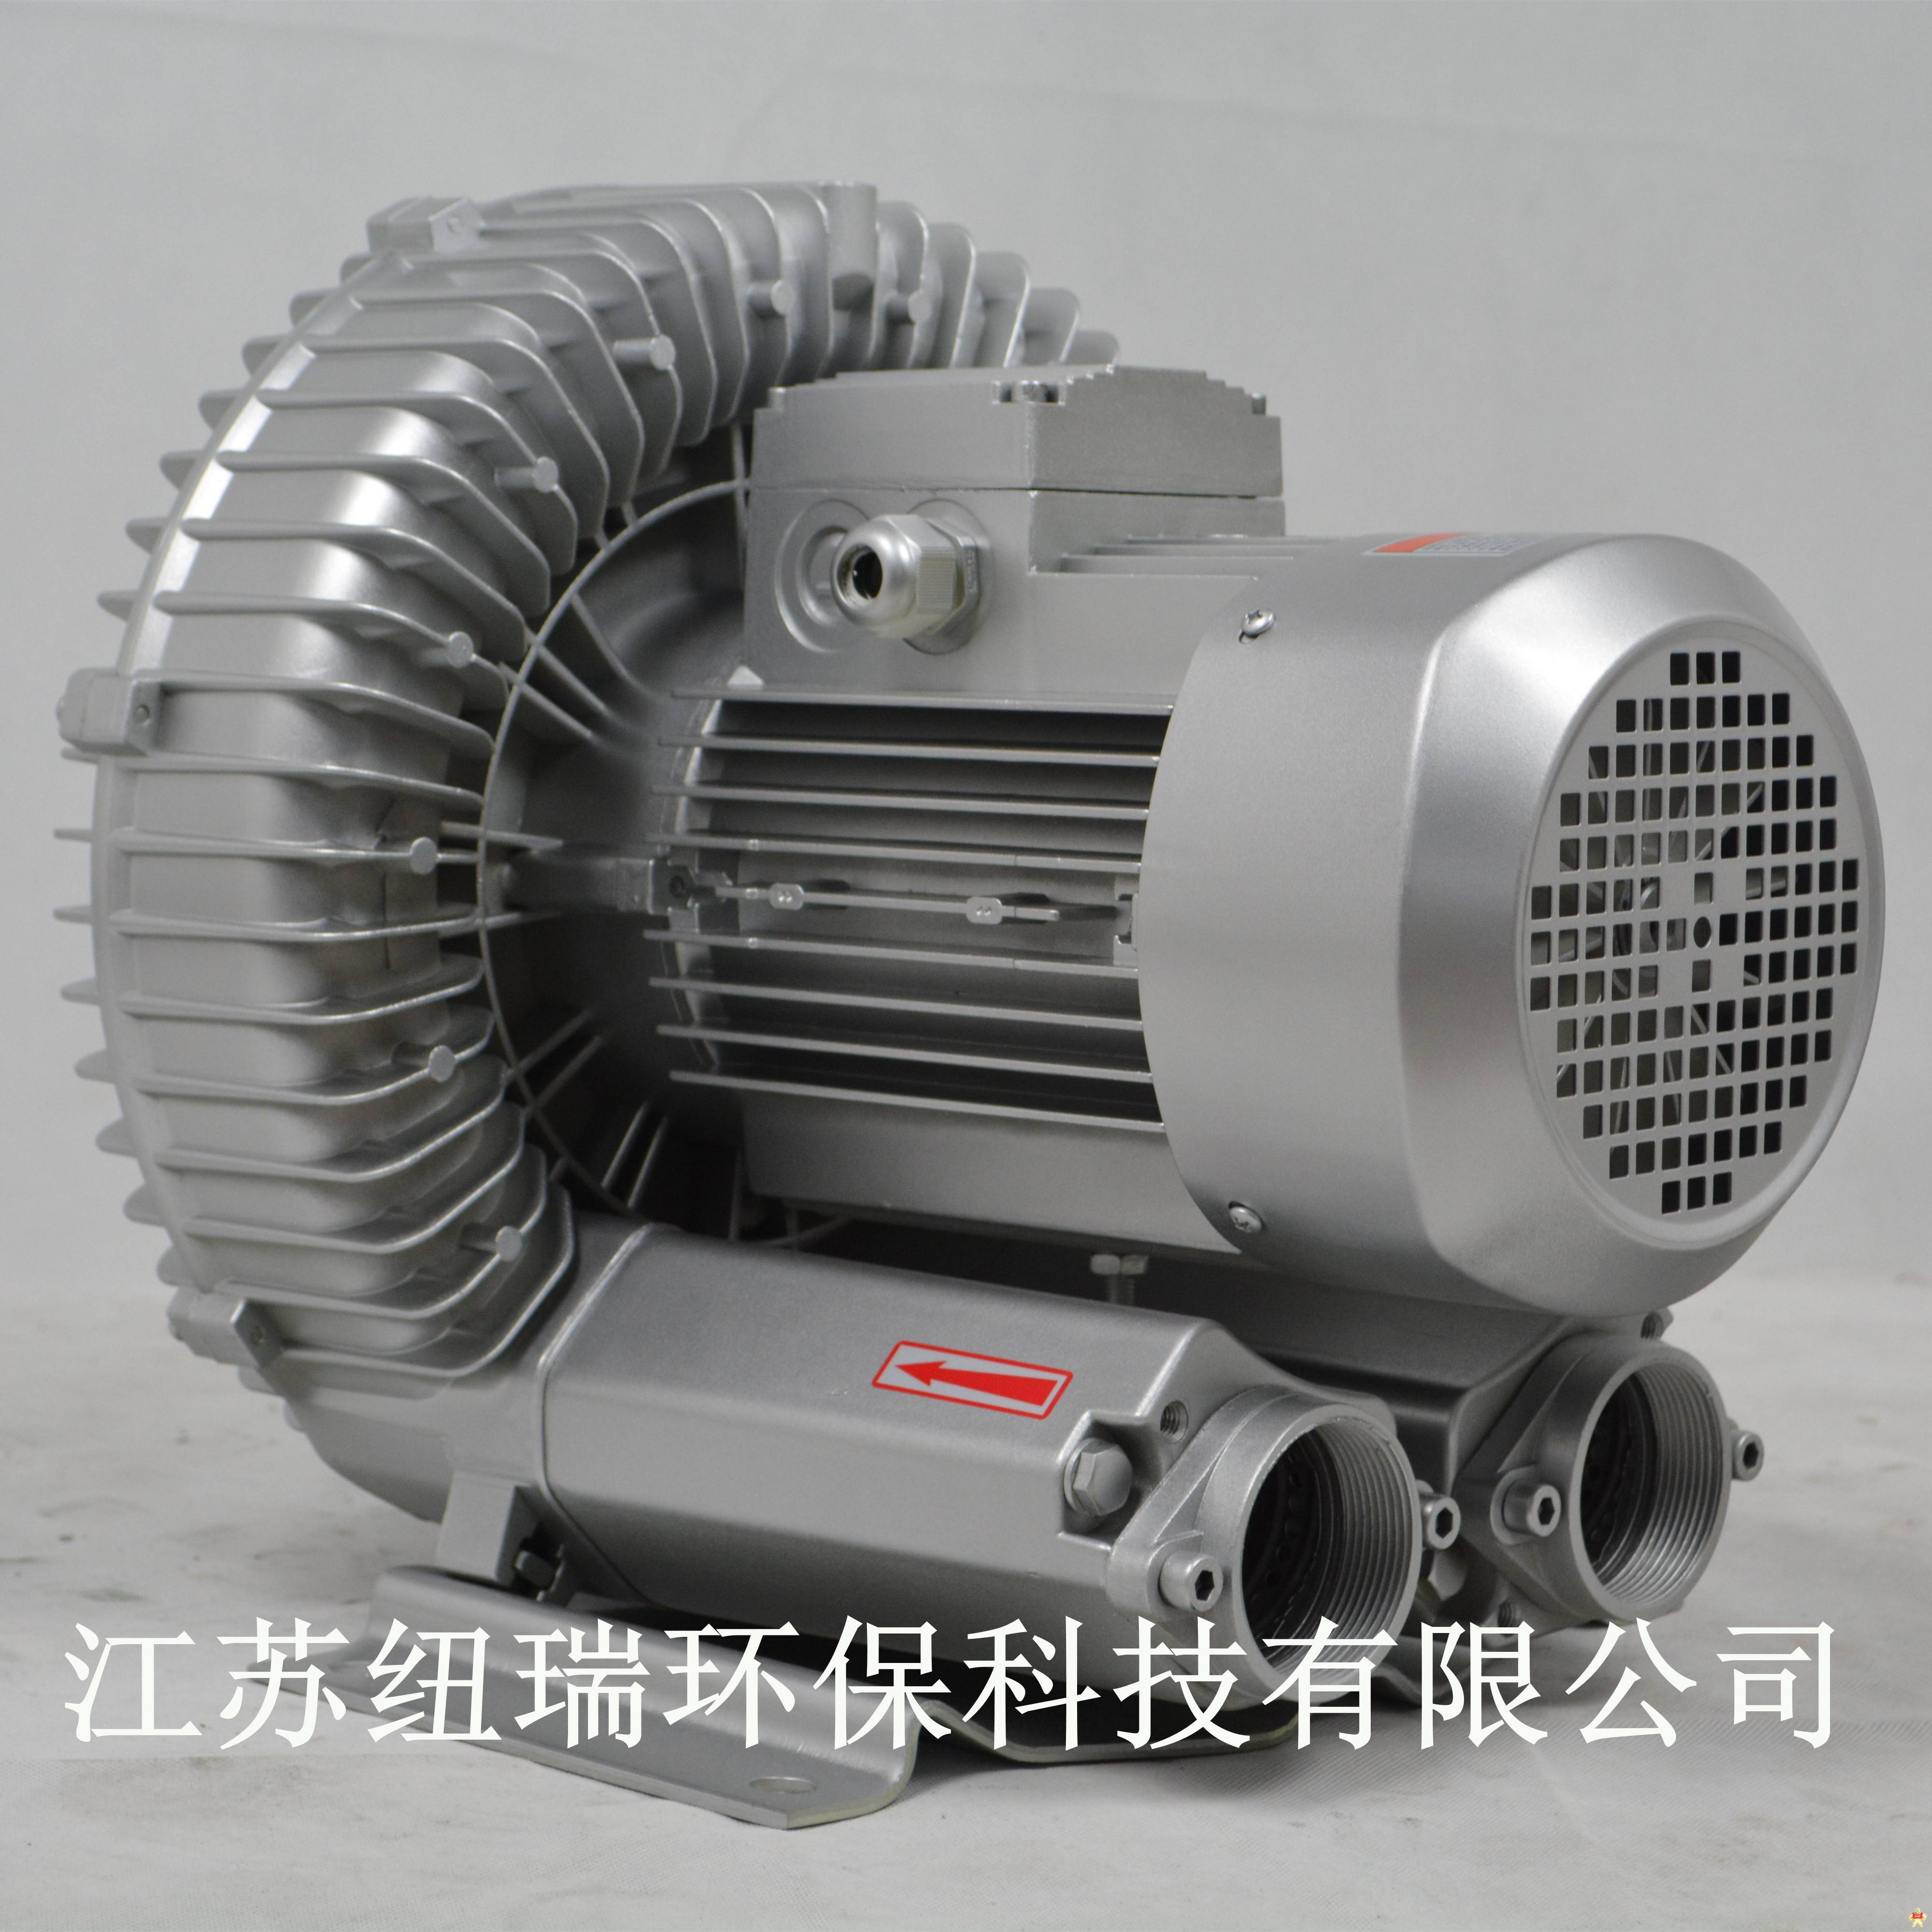 3kw变频旋涡气泵-旋涡变频气泵 高压旋涡气泵,气环式旋涡气泵,单叶轮旋涡气泵,双叶轮漩涡气泵